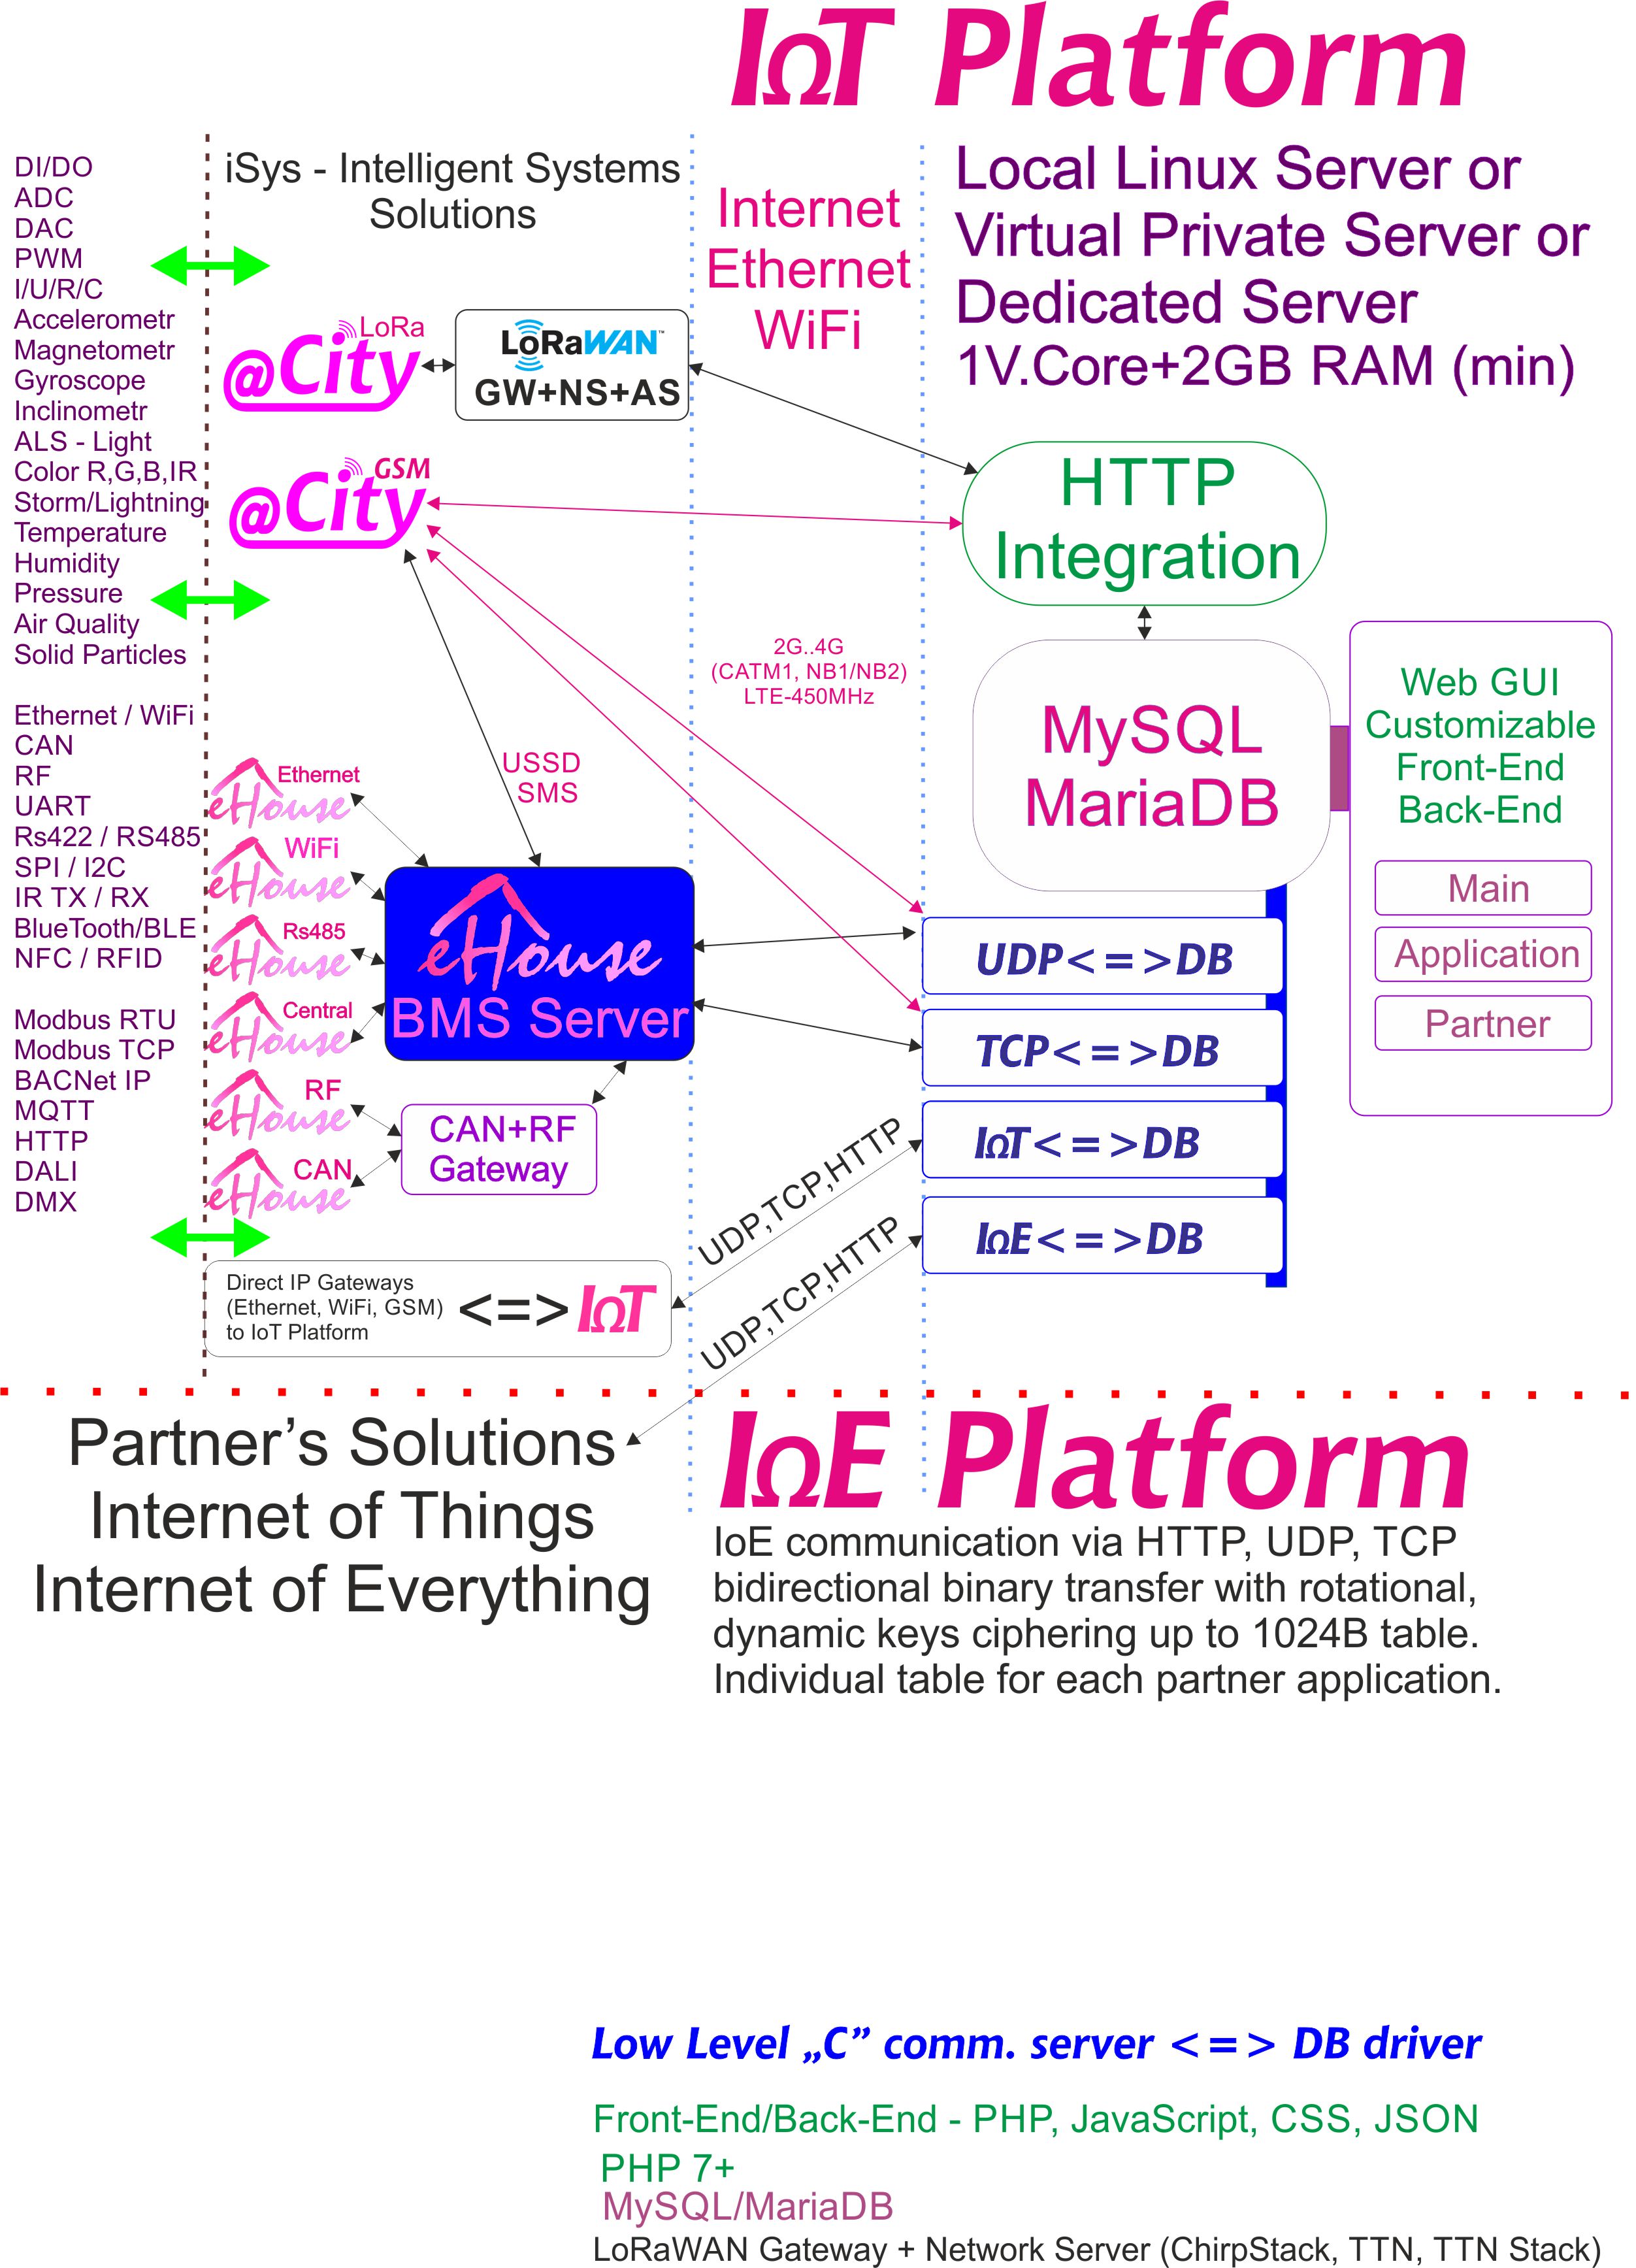 Fərdi şifrələmə ilə hər bir ortaq üçün ayrılmış IoE, IoT Platforması